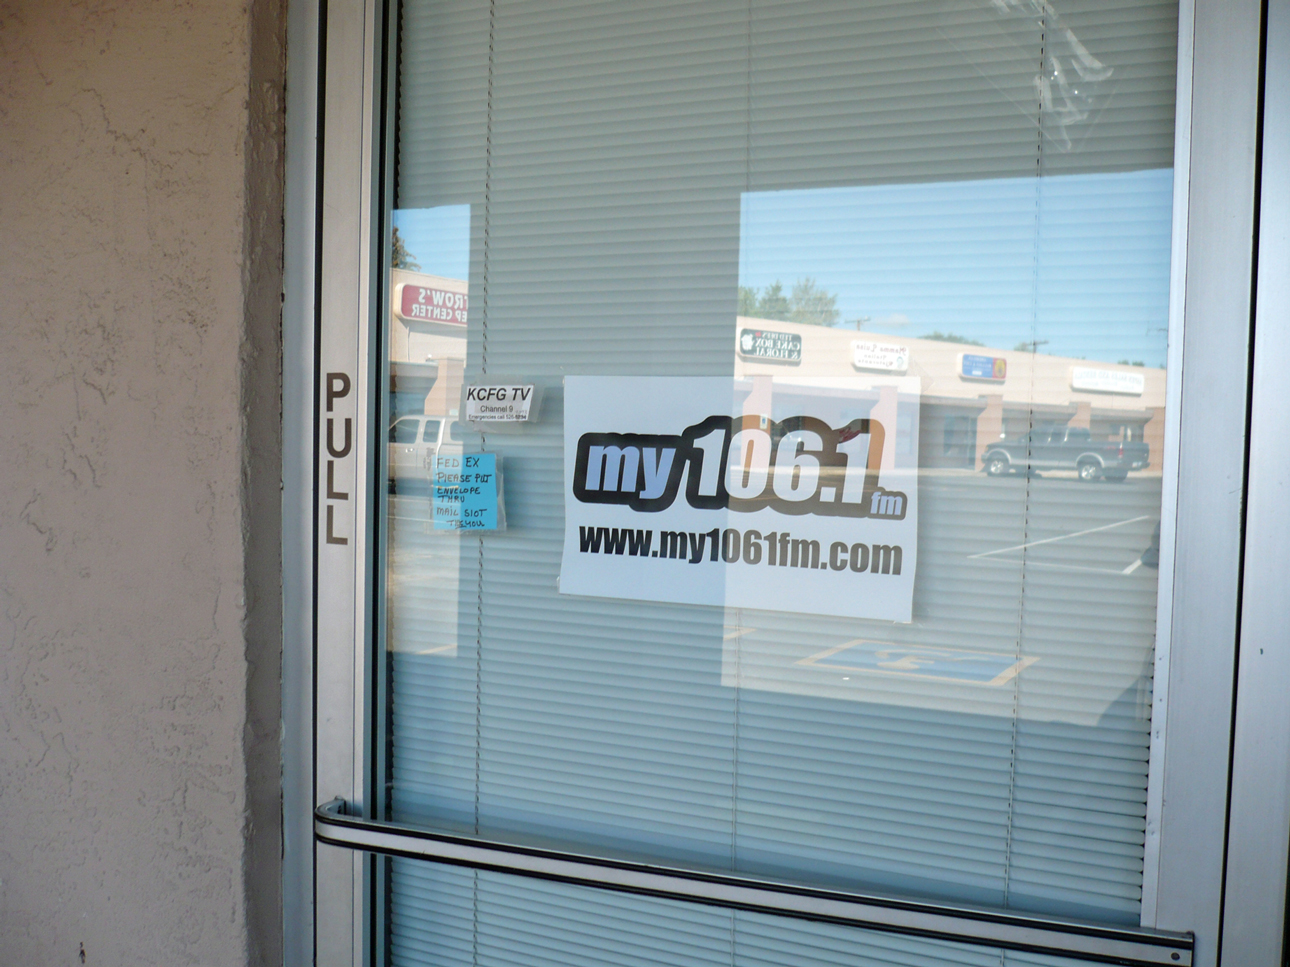 KFSZ FM Radio Munds Park, Arizona